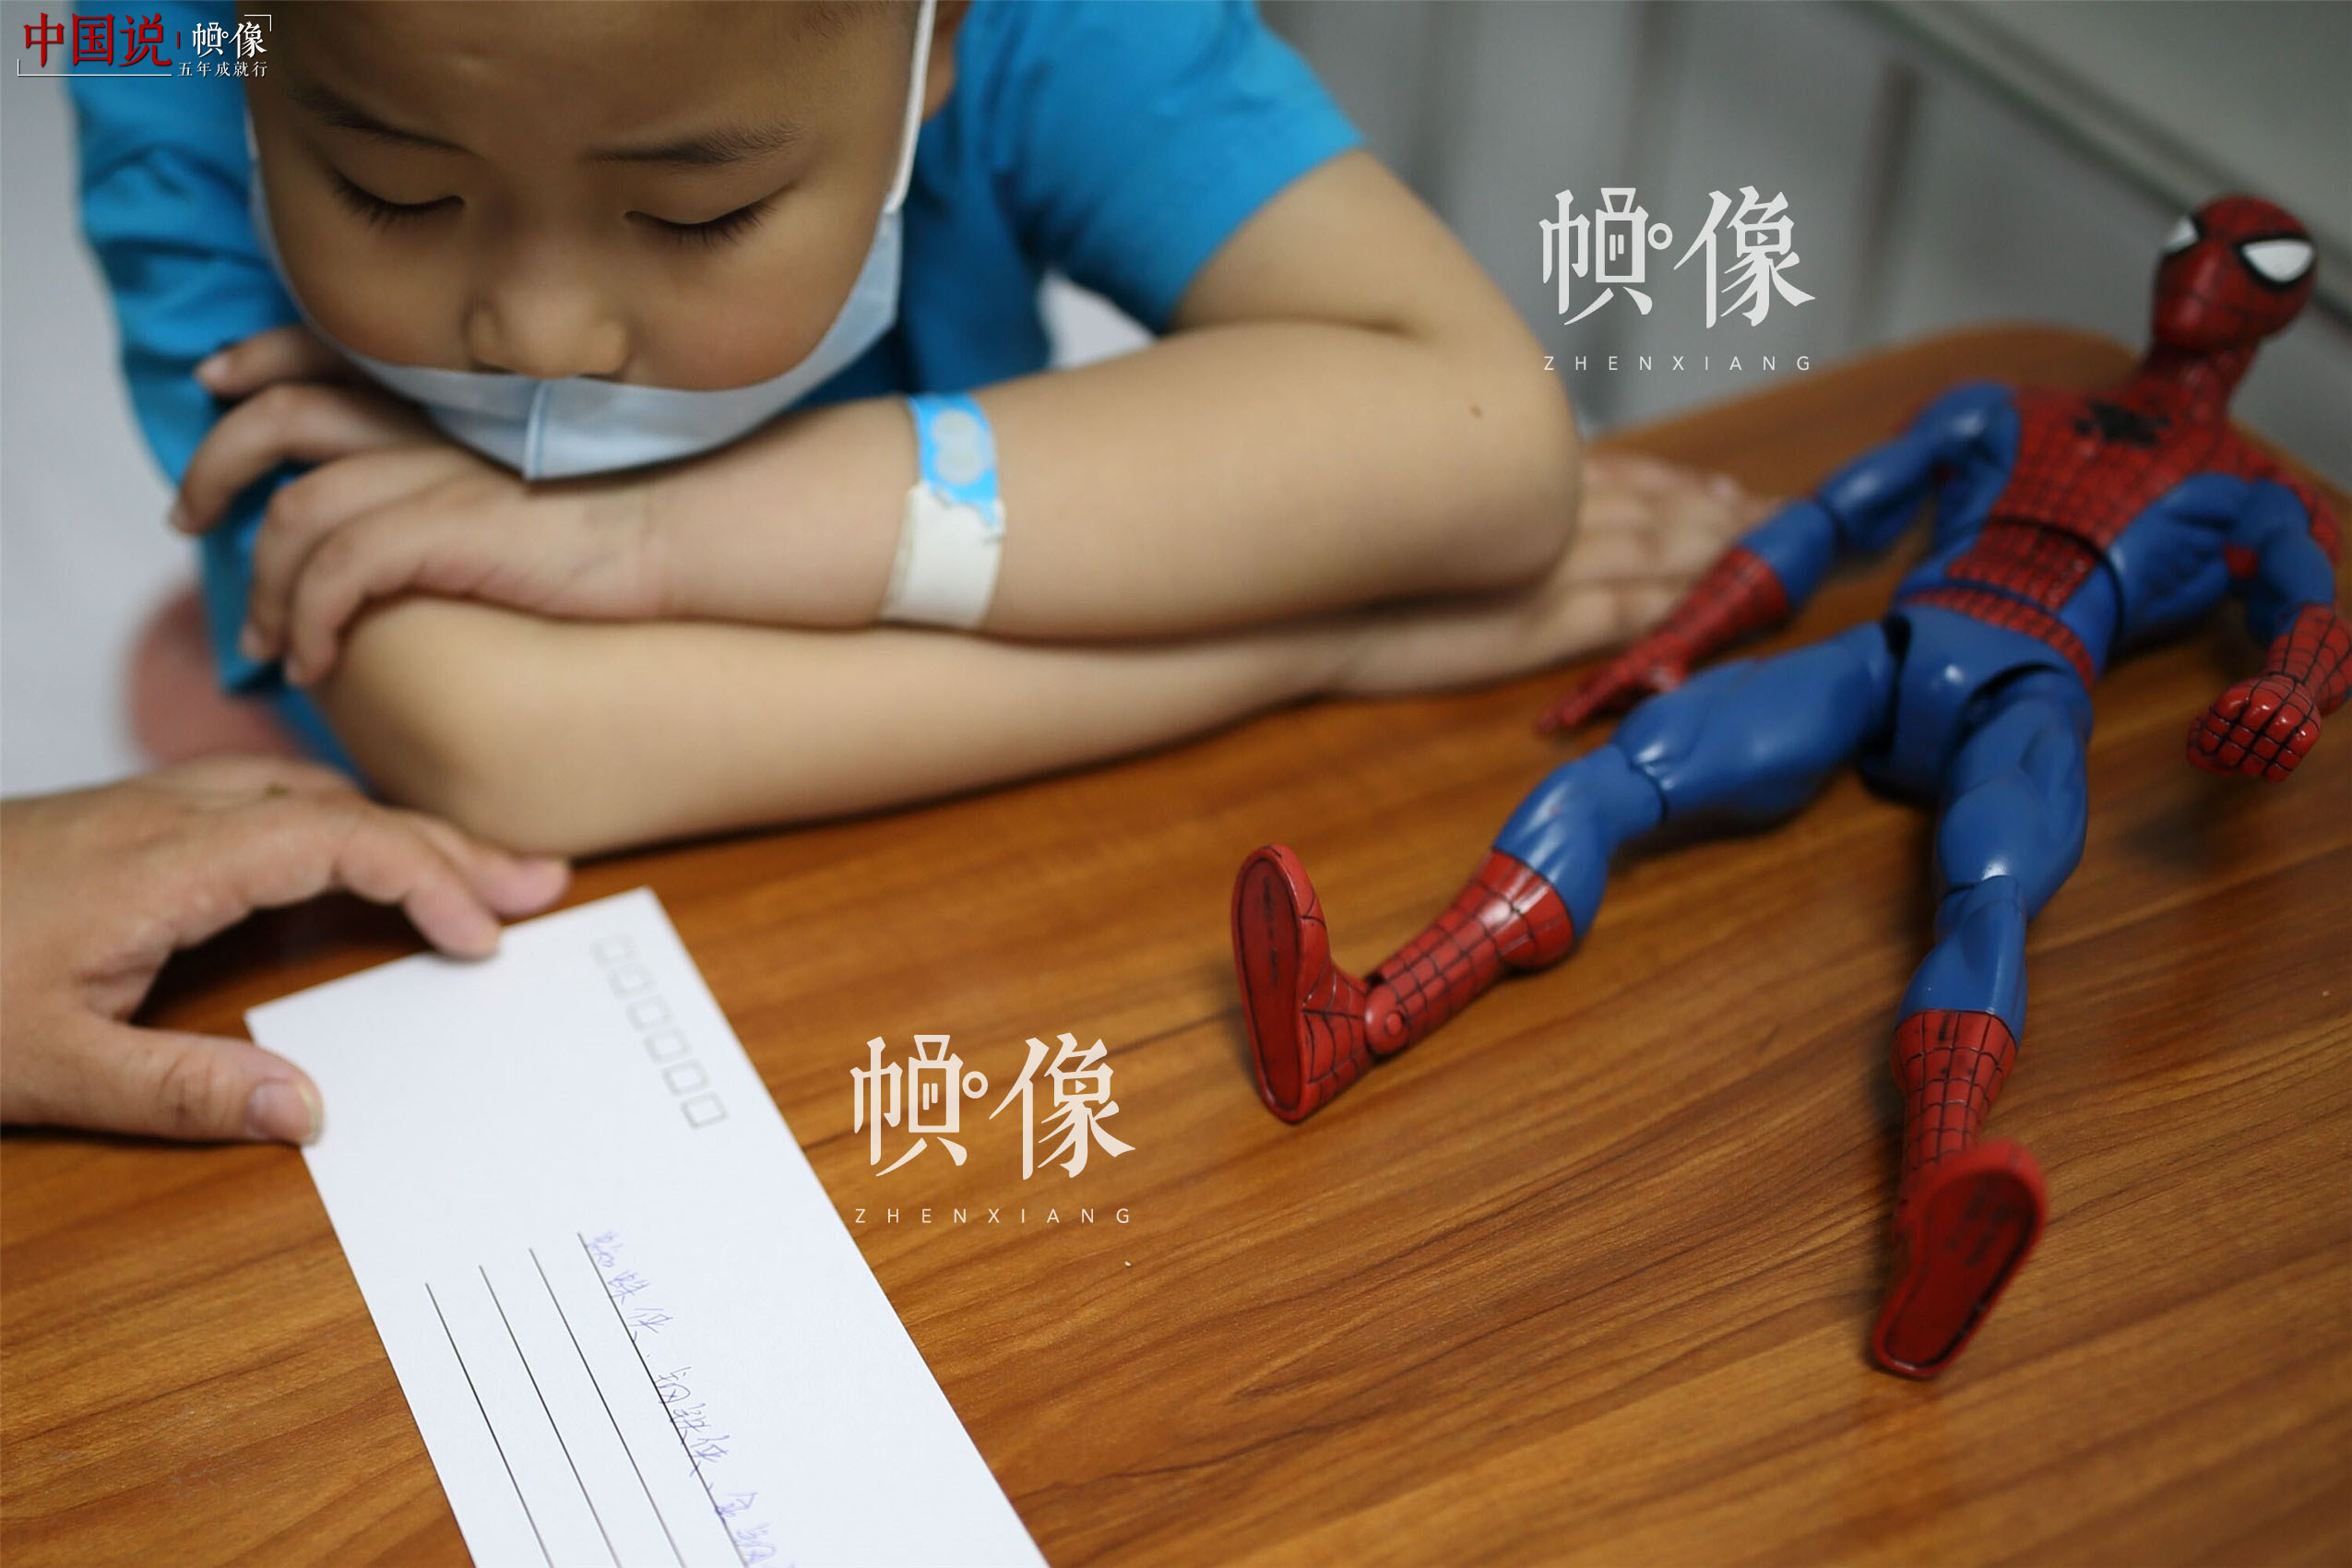 2017年5月24日，北京首都儿科研究所，当问到自己心中的英雄时，天佑说自己除了蜘蛛侠，还喜欢钢铁侠和金刚狼。中国网记者 陈维松 摄